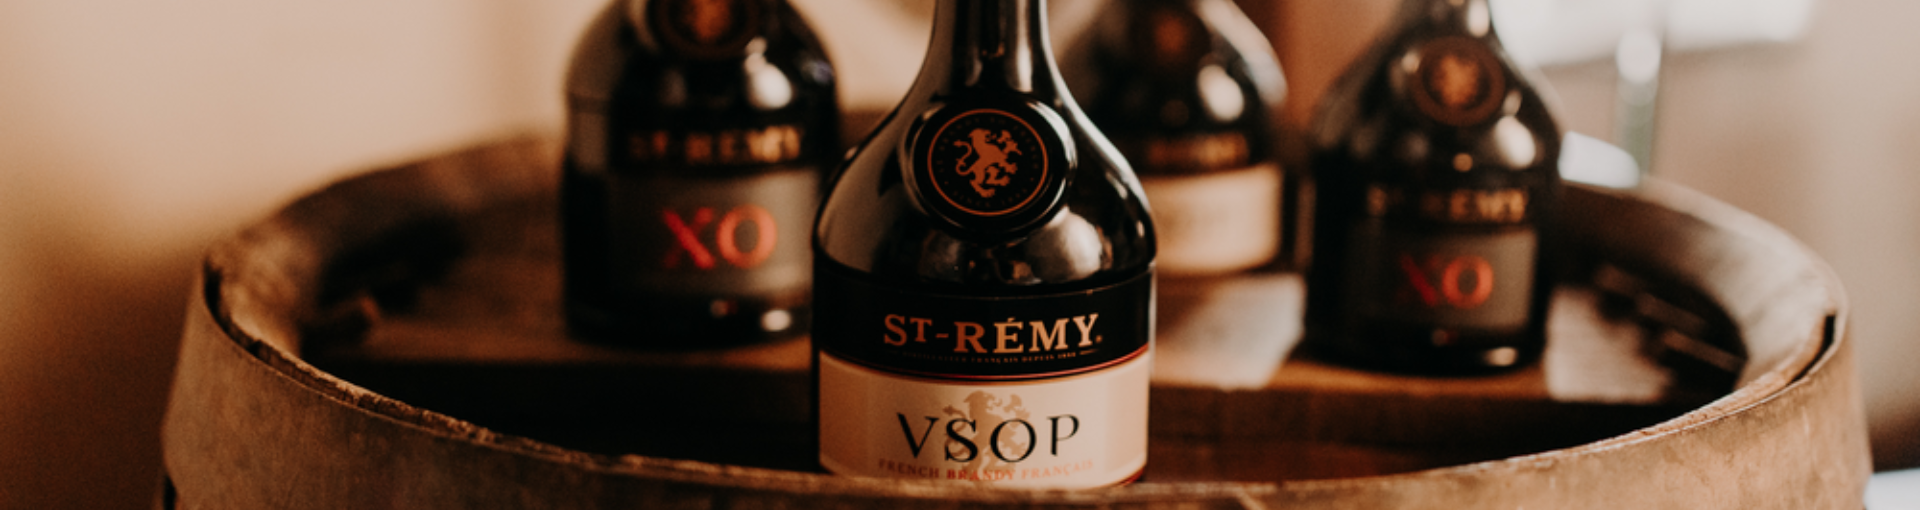 Jeweils 2 Flaschen St. Remy VSOP und St. Remy XO auf einem Holzfass